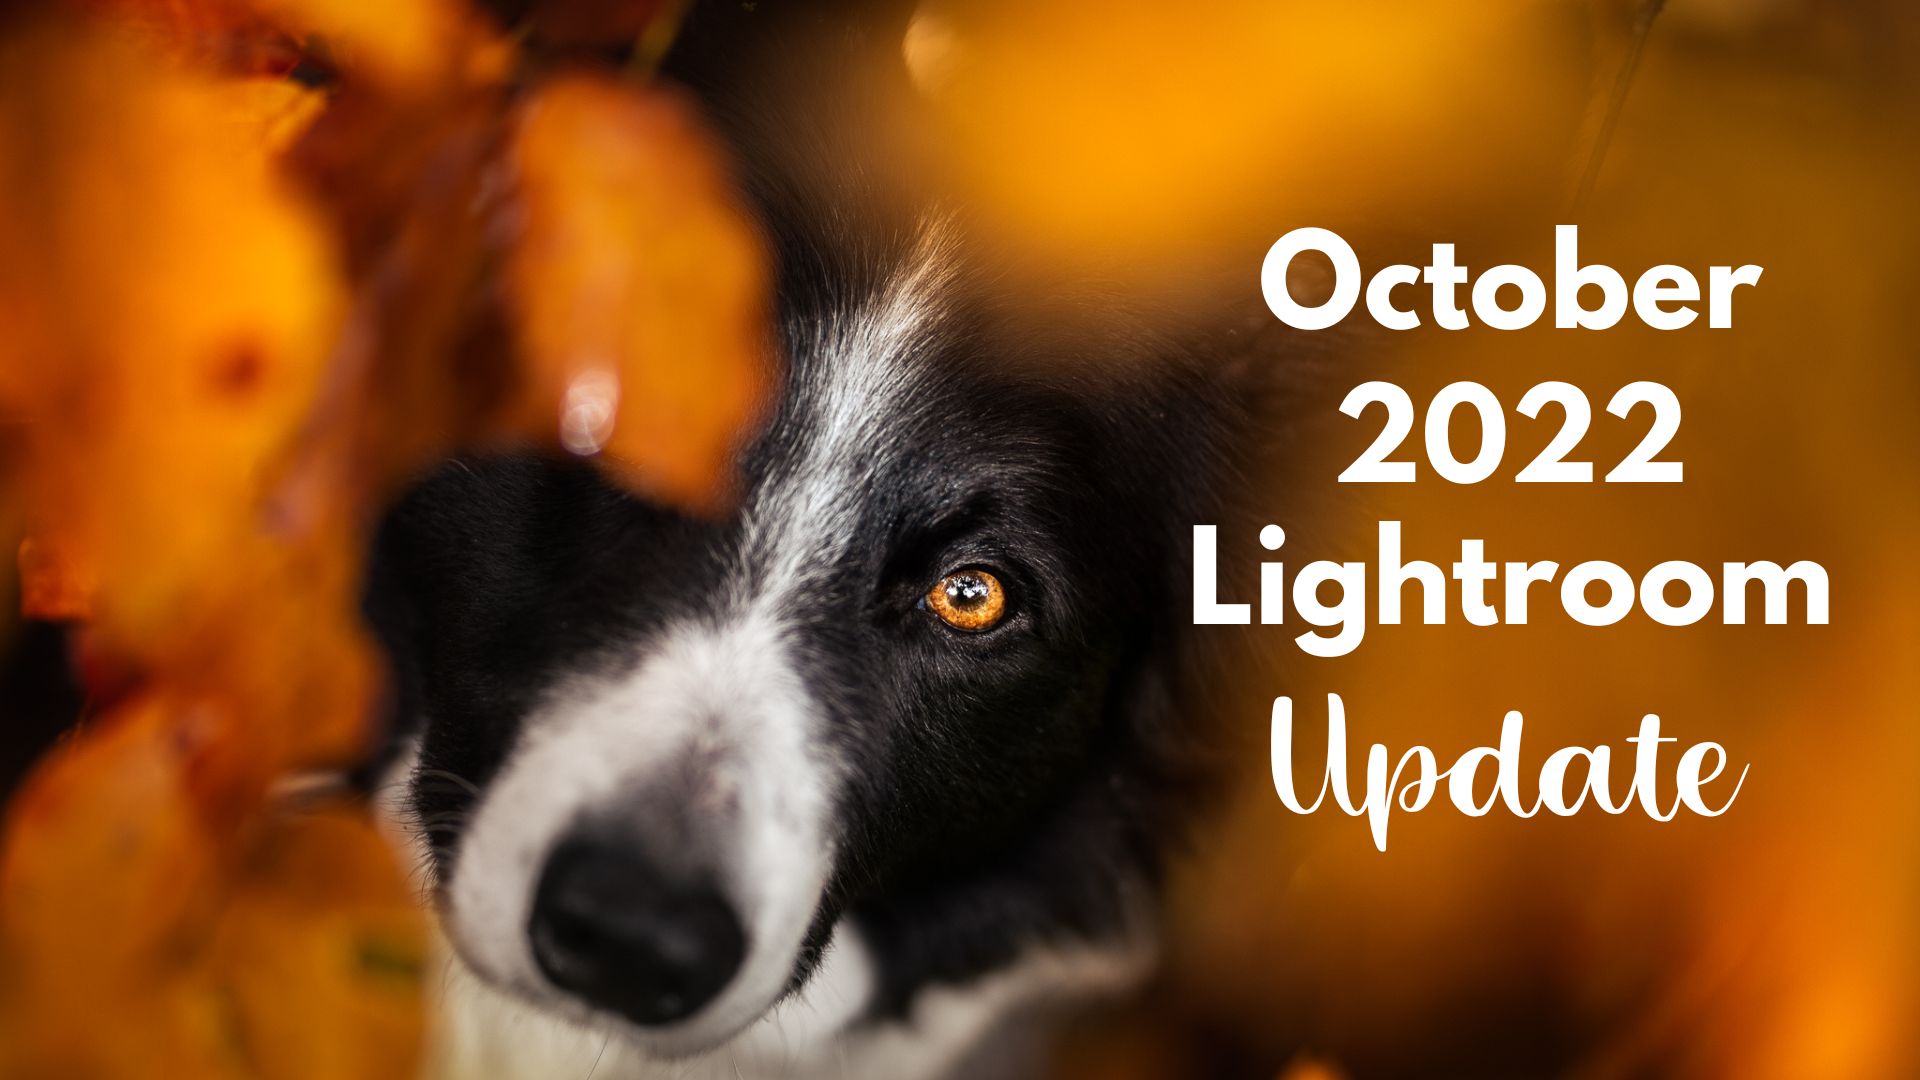 October 2022 Lightroom Update